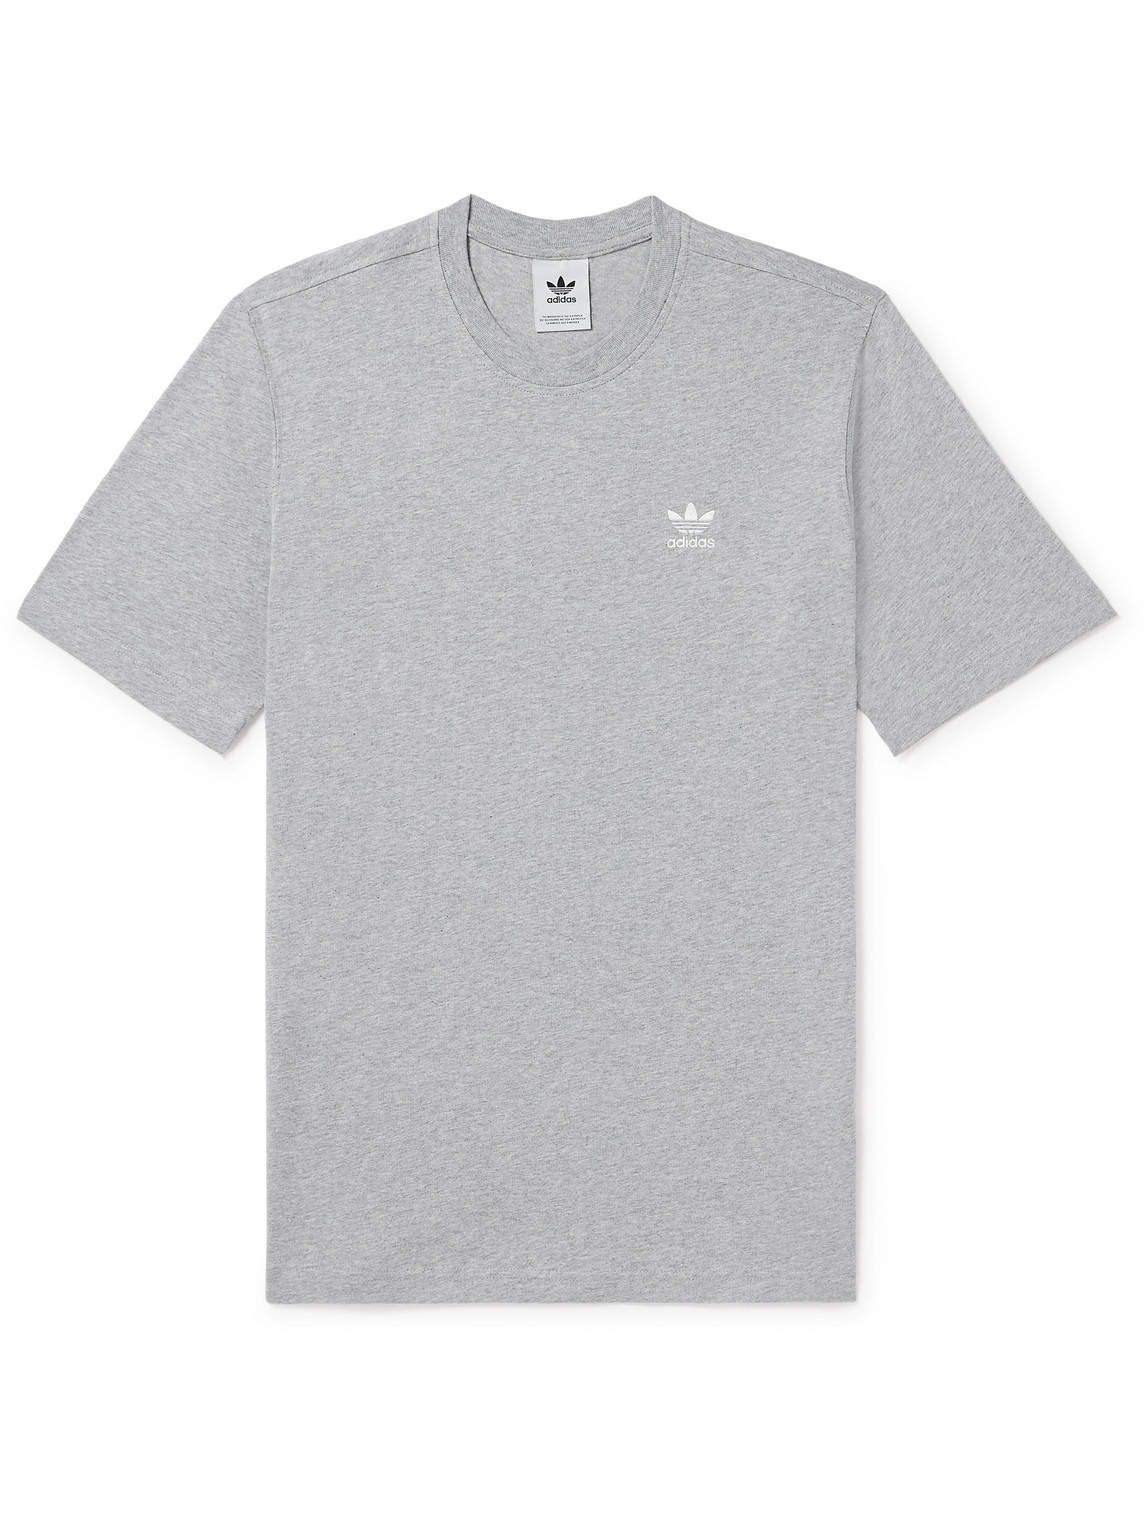 adidas Originals - Essentials Logo-Embroidered Cotton-Jersey T-Shirt - Men - Gray - M von adidas Originals